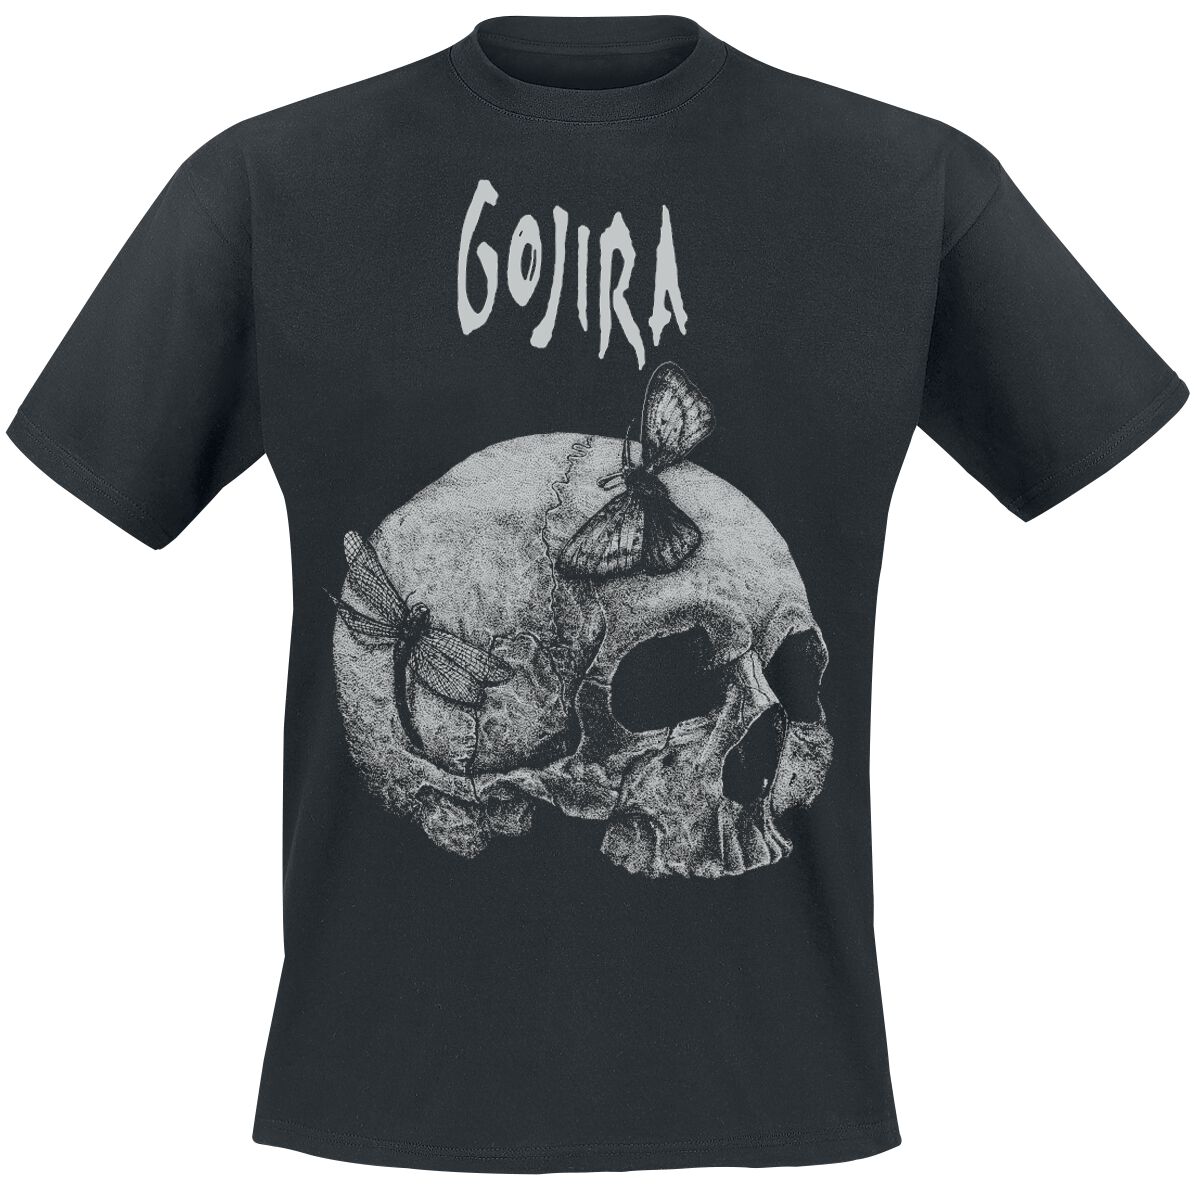 Gojira T-Shirt - Moth Skull - S bis XXL - für Männer - Größe XL - schwarz  - Lizenziertes Merchandise!